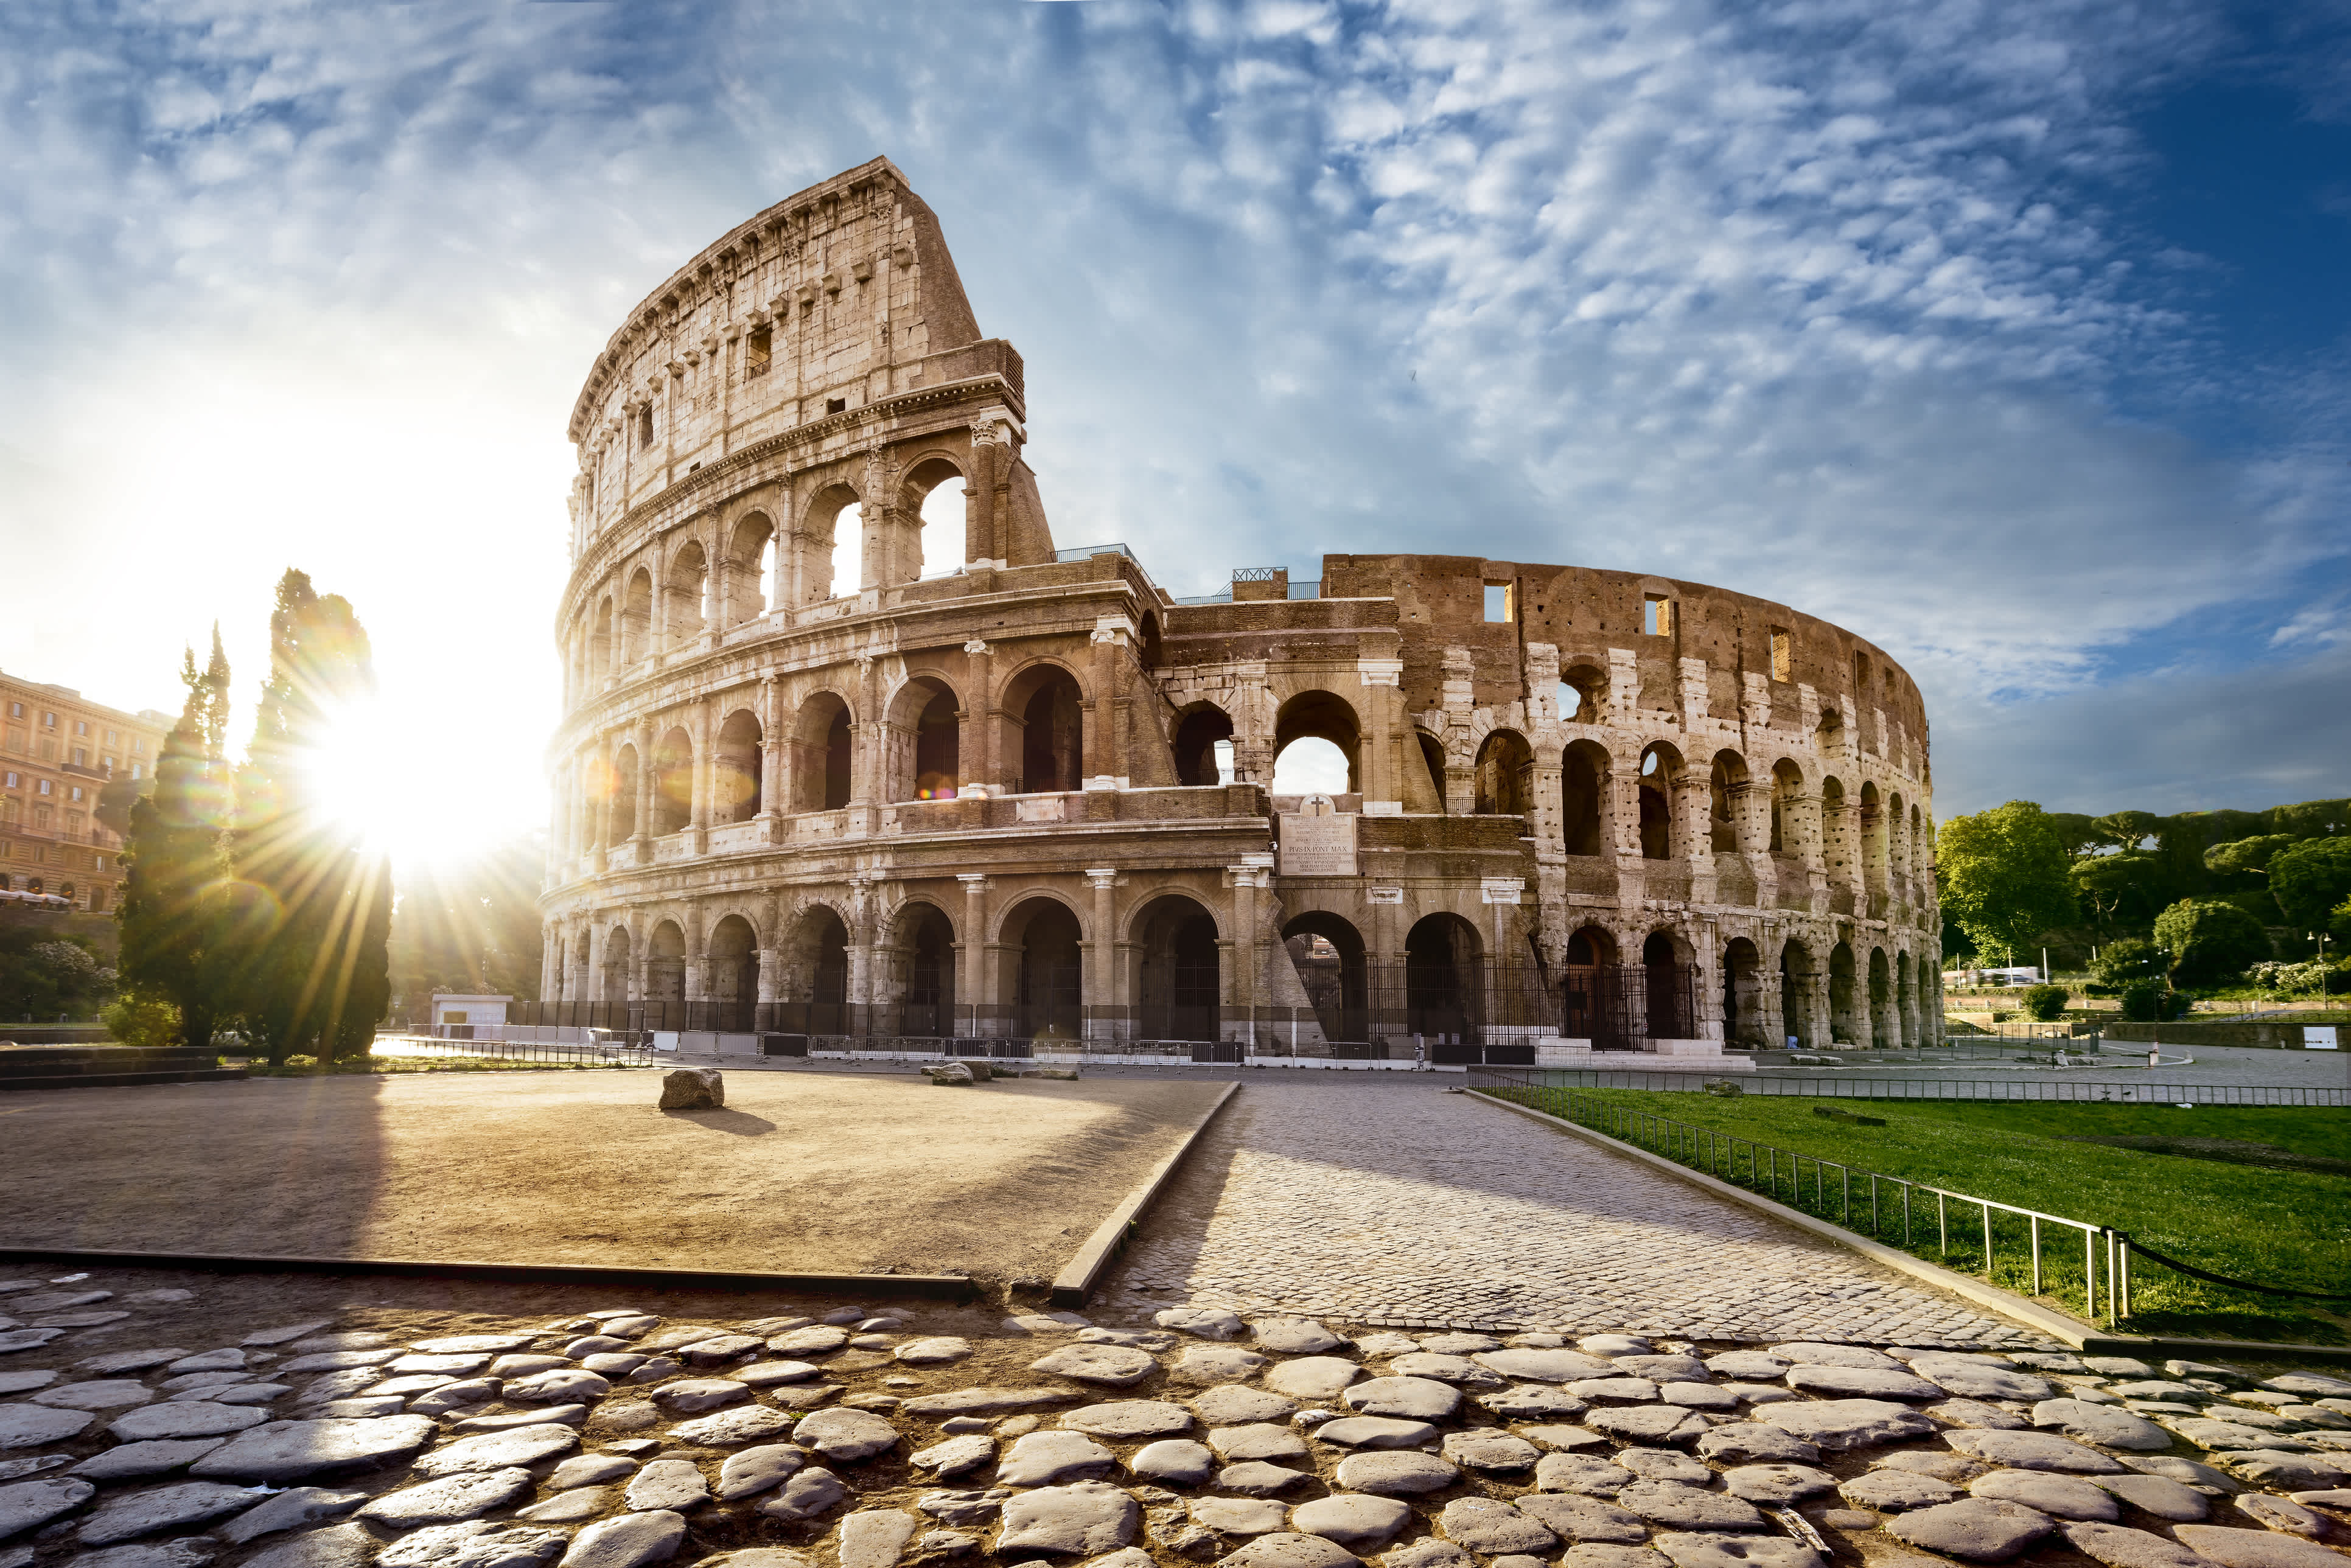 Découvrez le Colisée, ici photographié dans un ciel bleu, lors de votre voyage à Rome, Italie, Europe